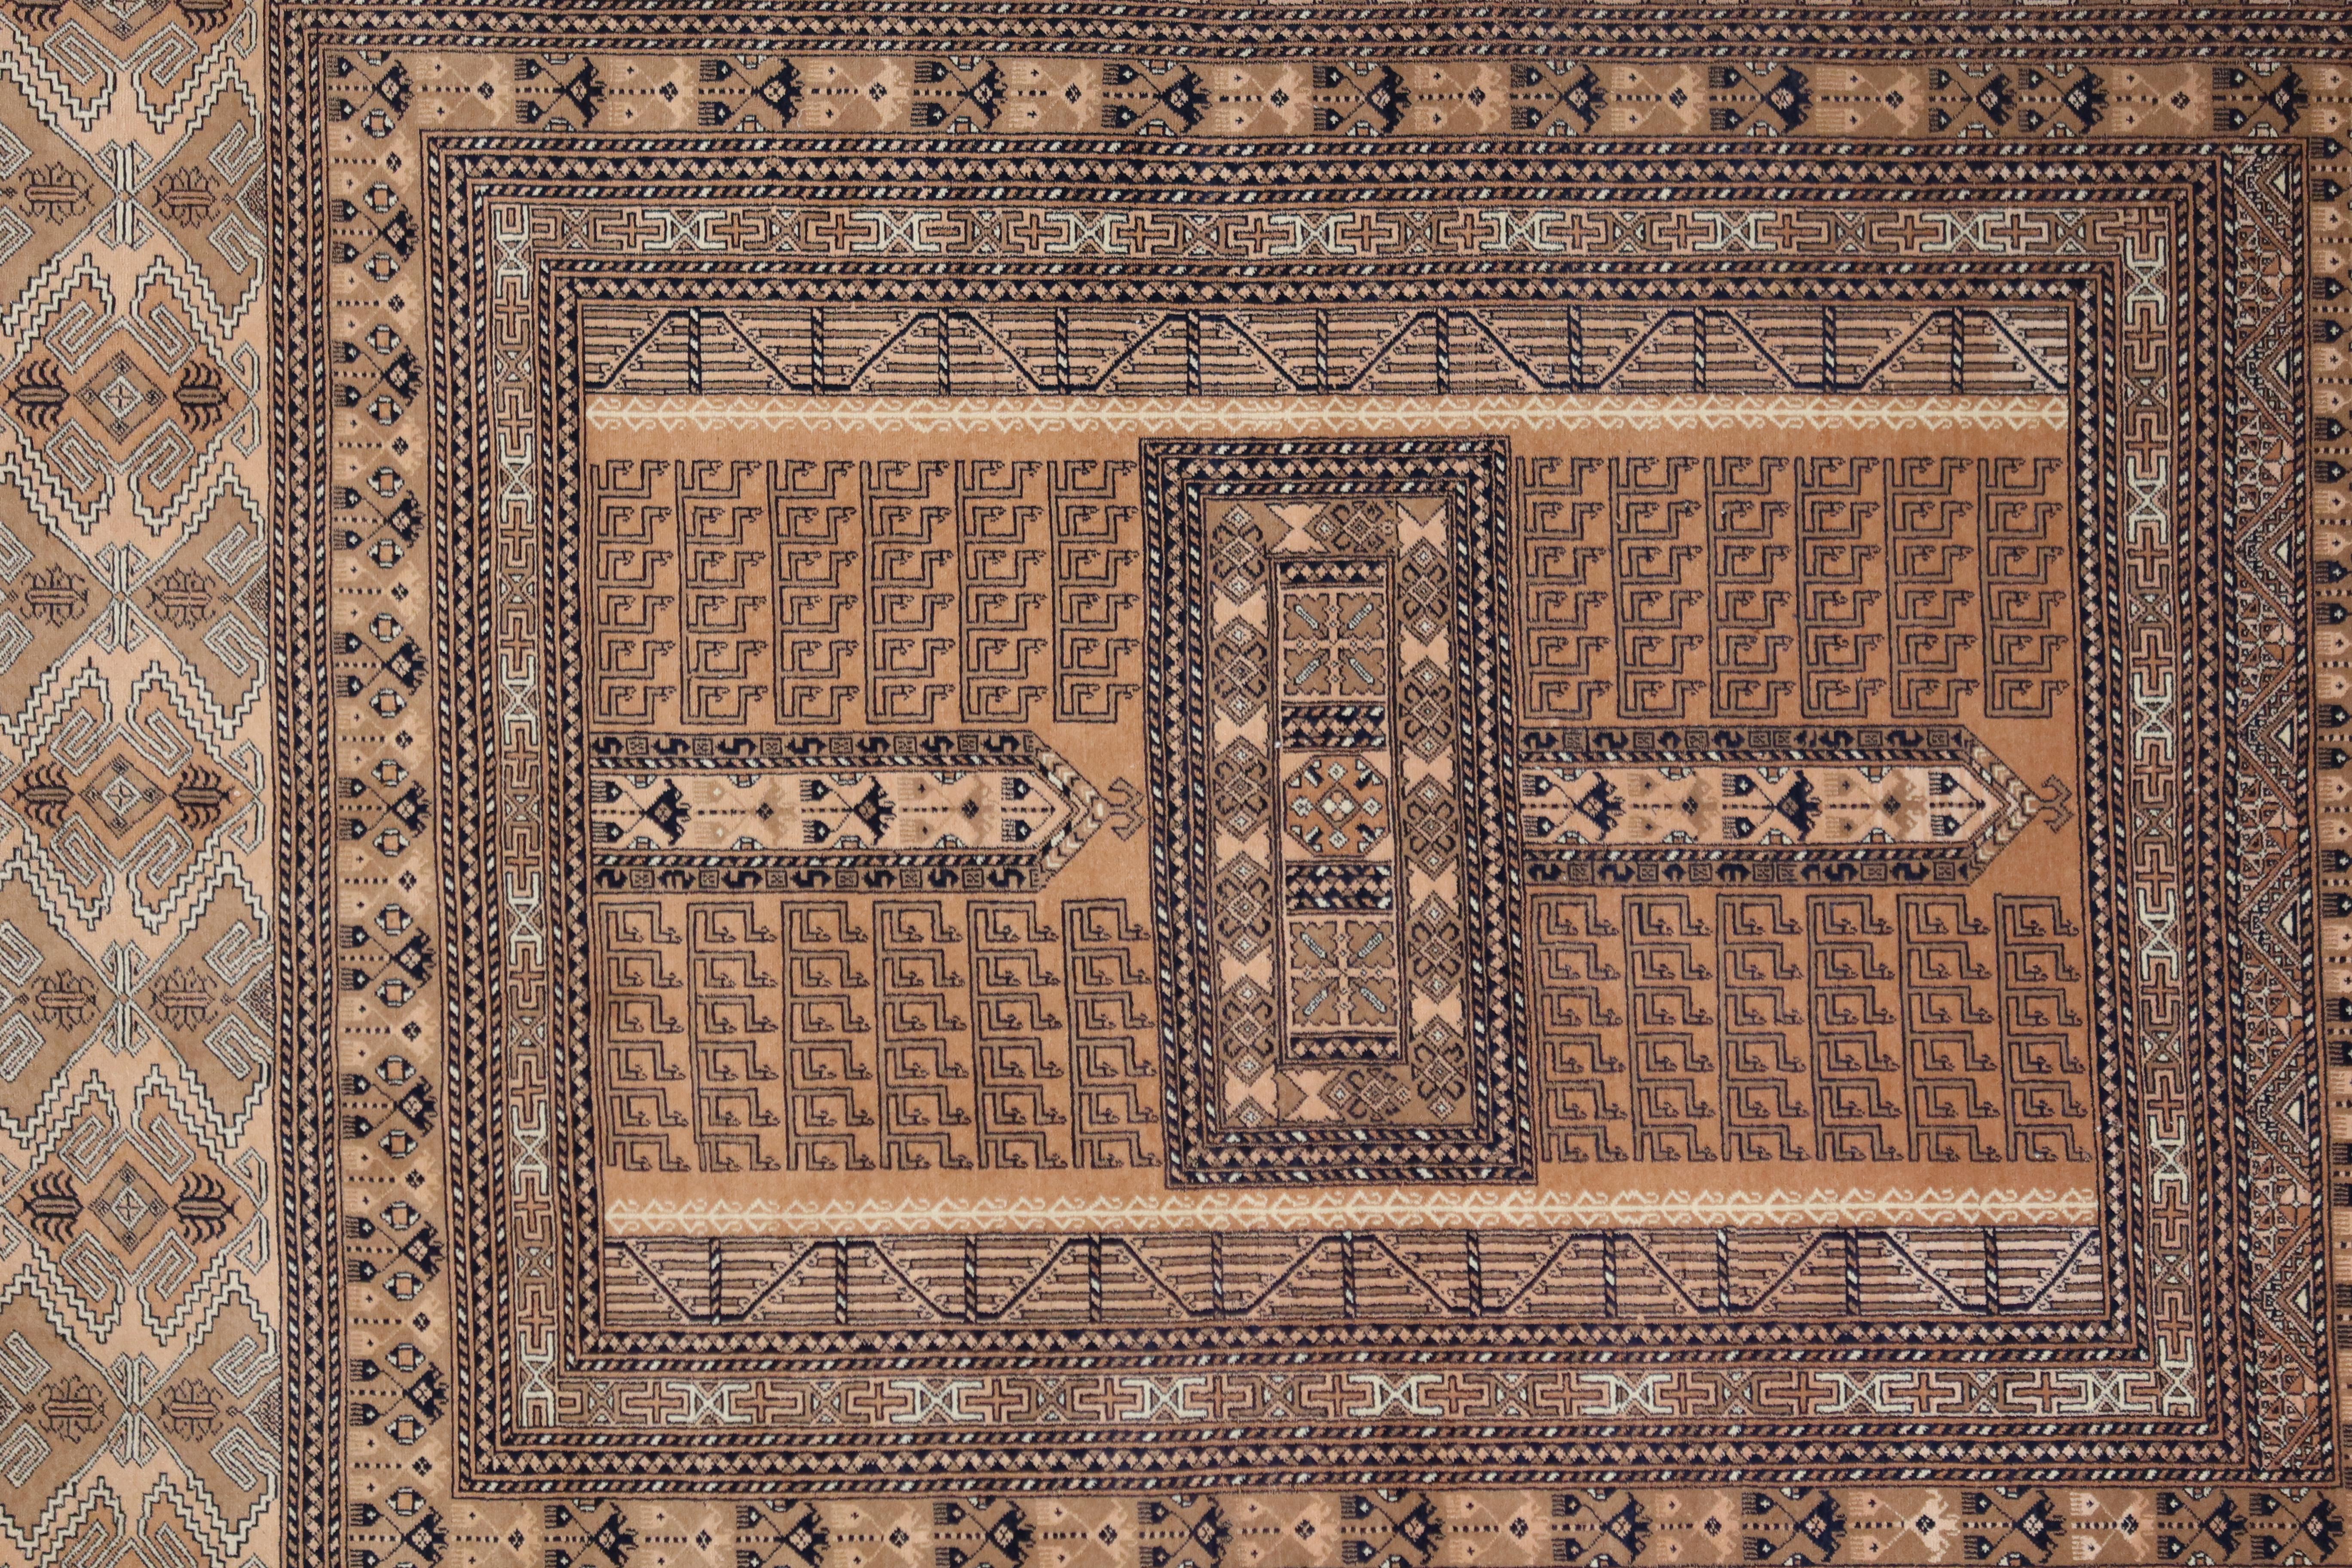 Hachlu-Teppiche wurden von Turkmenenstämmen (Turkomen oder Turkoman) hergestellt, die hauptsächlich in Turkmenistan und Nordafghanistan (Provinz Balkh) leben. Die Hachlu-Muster sind Varianten der Tekke Gul Bokhara-Teppiche, die auf dem turkmenischen